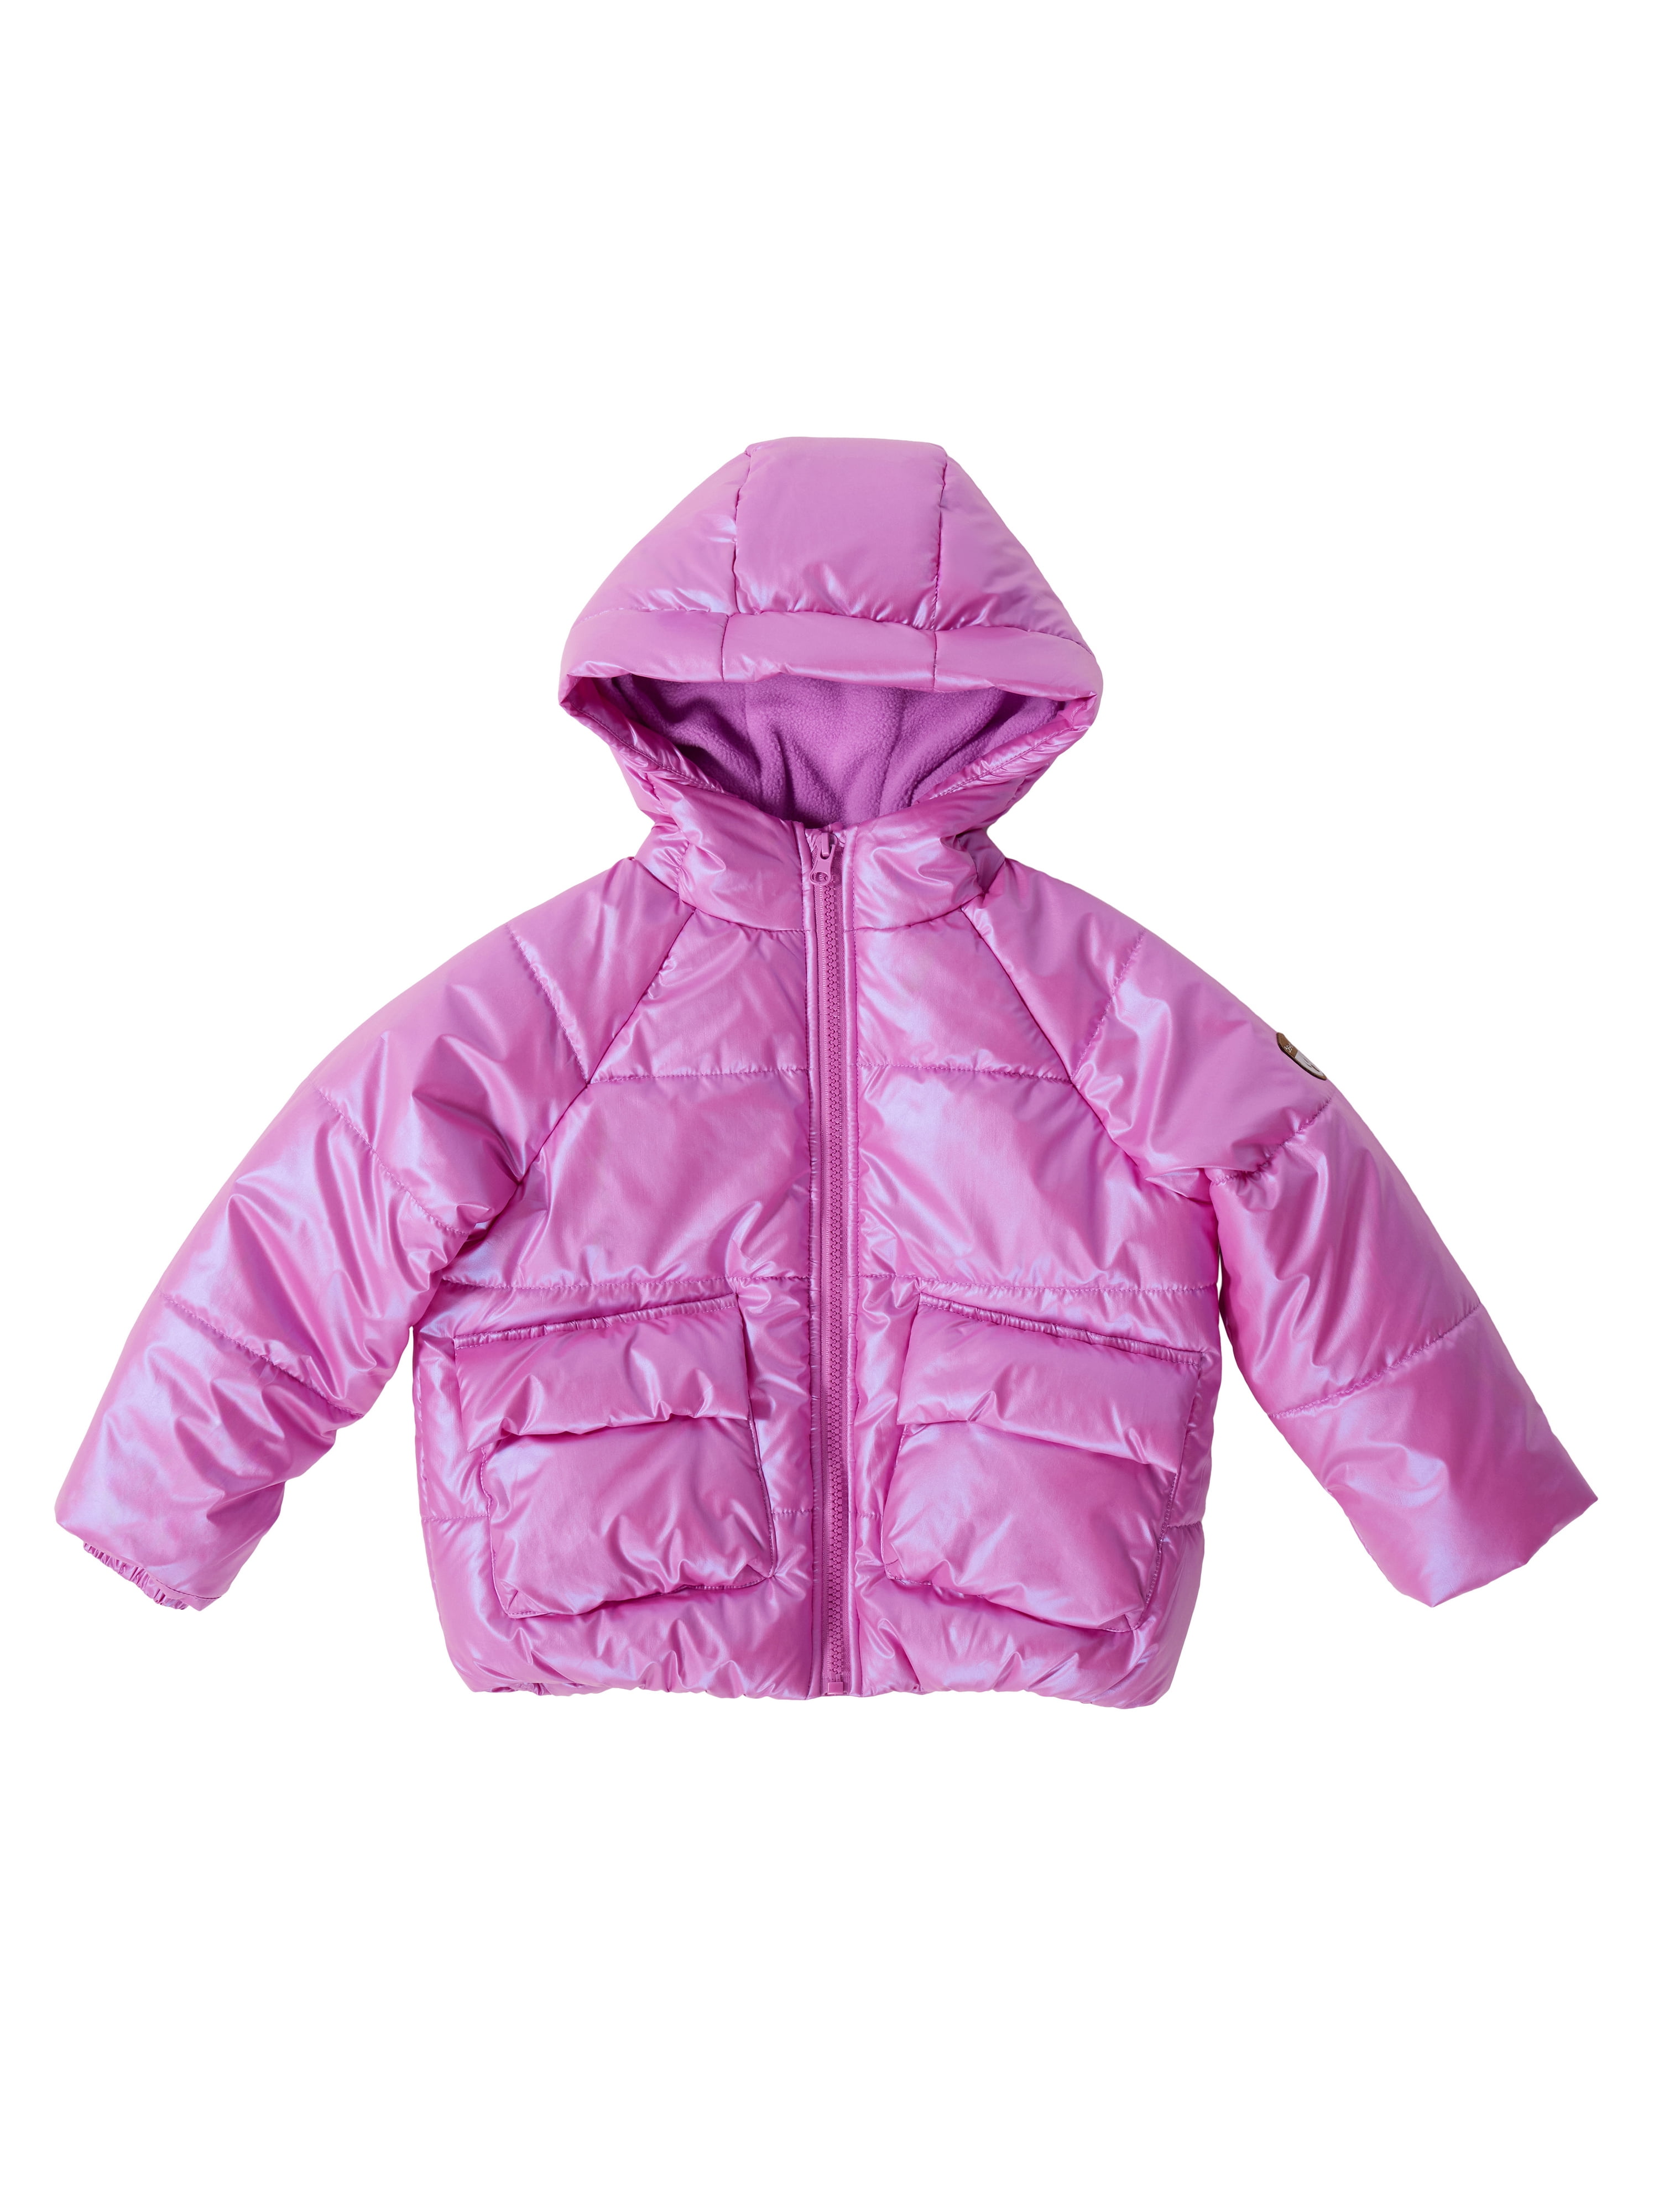 BEARPAW Girl's Metallic Puffer Coat with Hood Jacket - Walmart.com